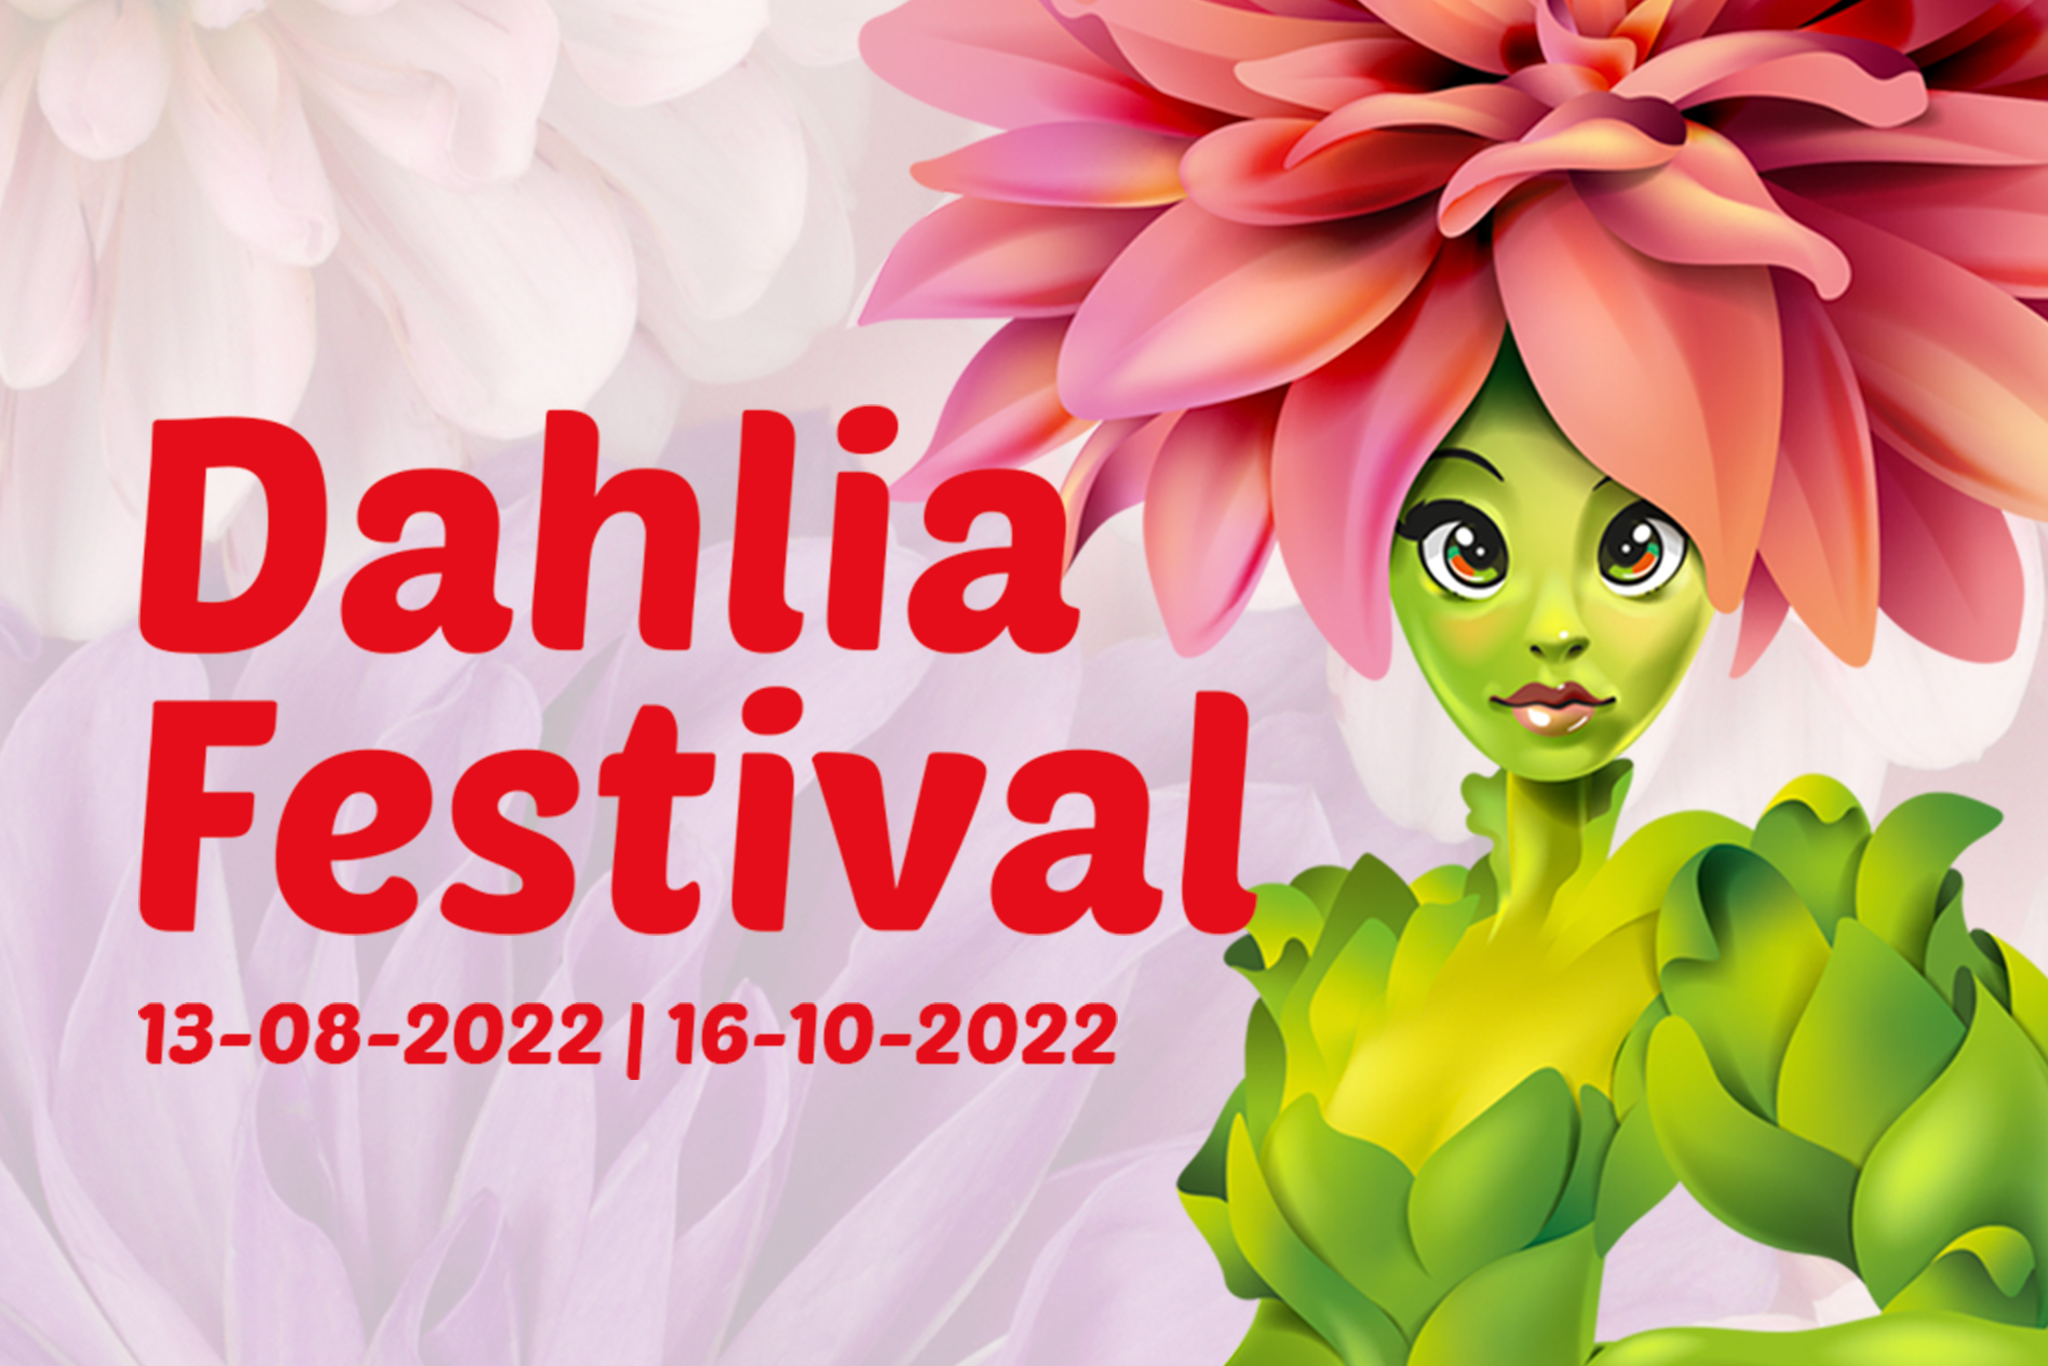 Dahlia Festival 2022